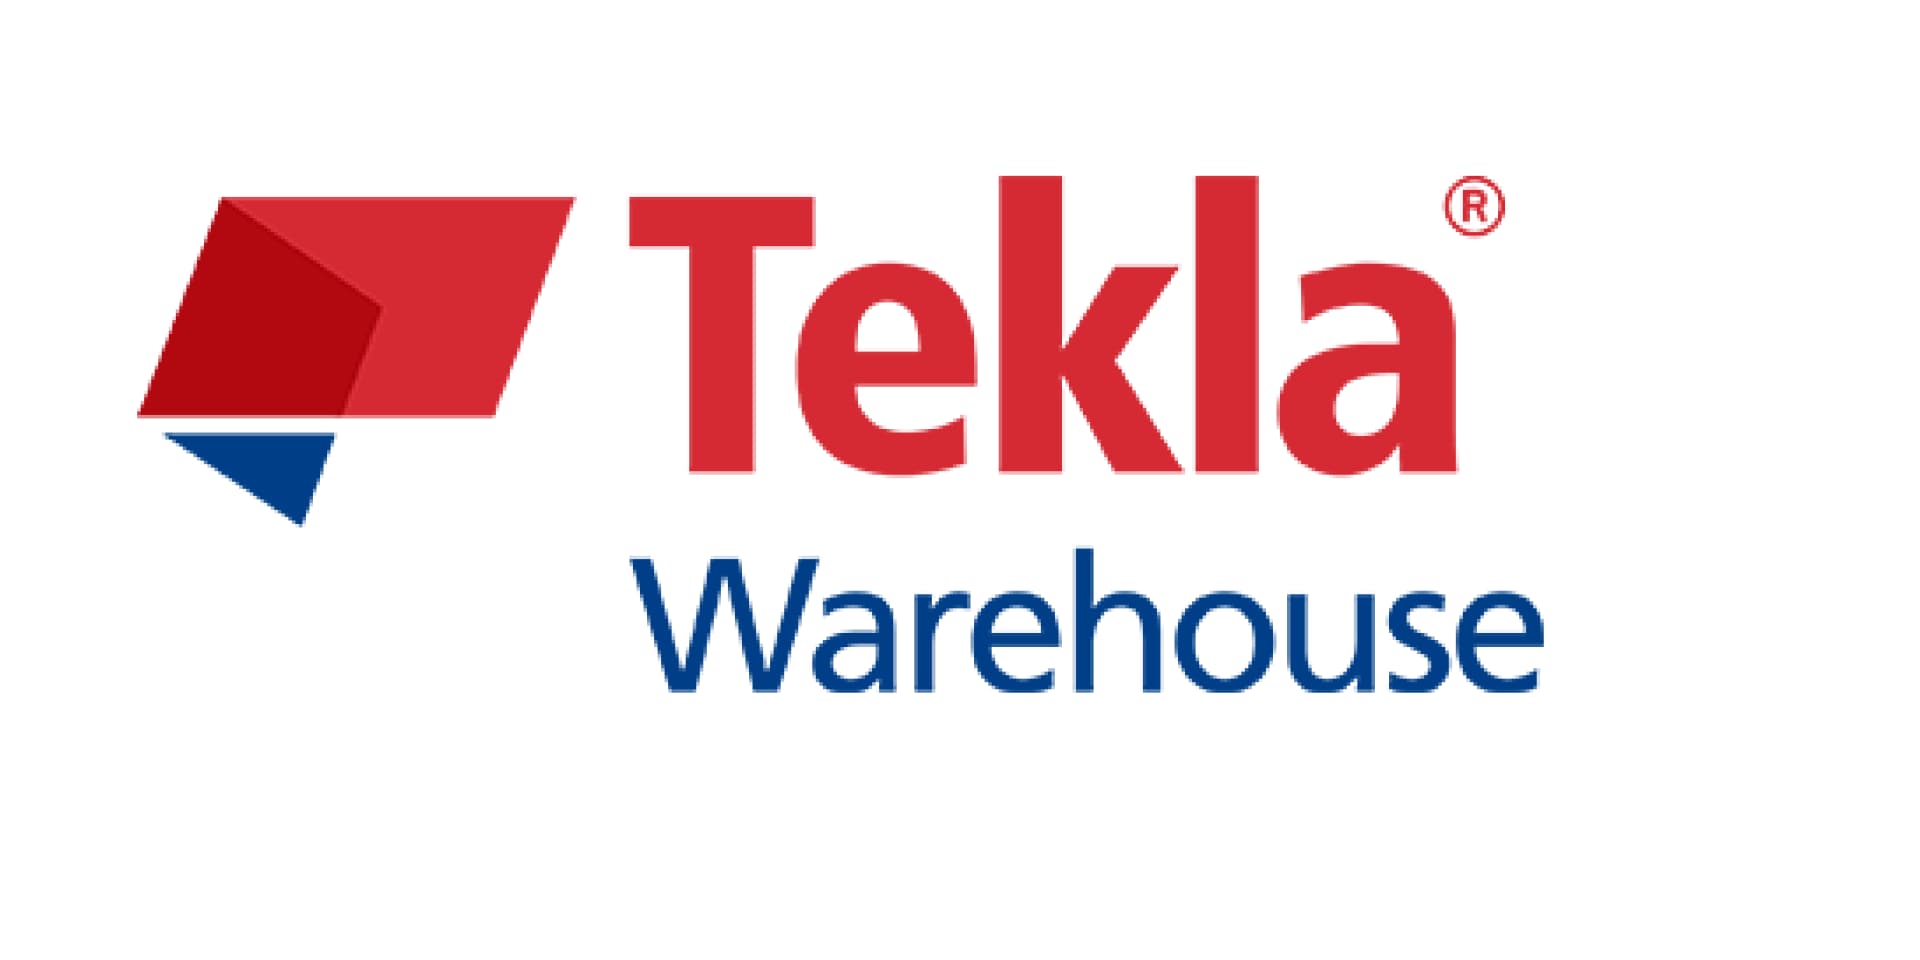 Tekla Warehouse